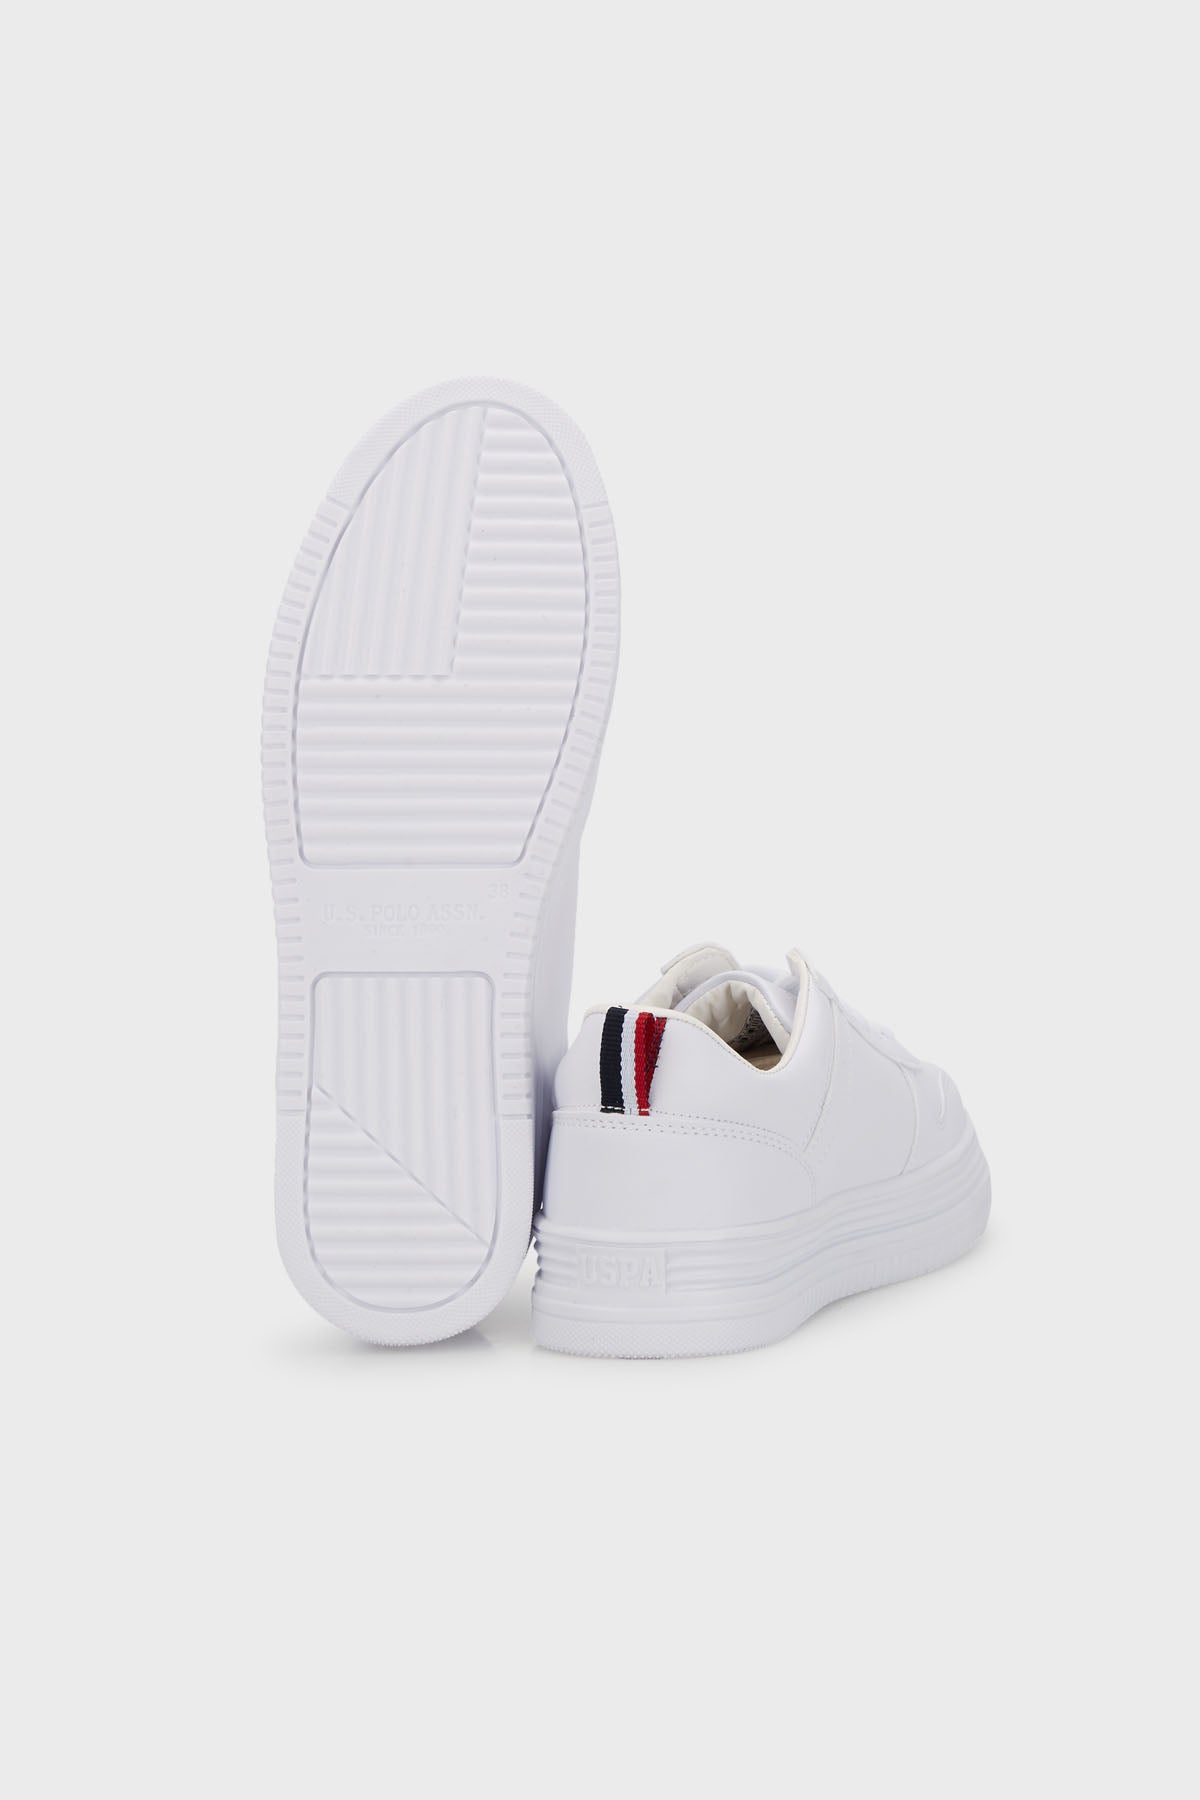 U.S. Polo Assn Sneaker Bayan Ayakkabı SURI 3FX BEYAZ